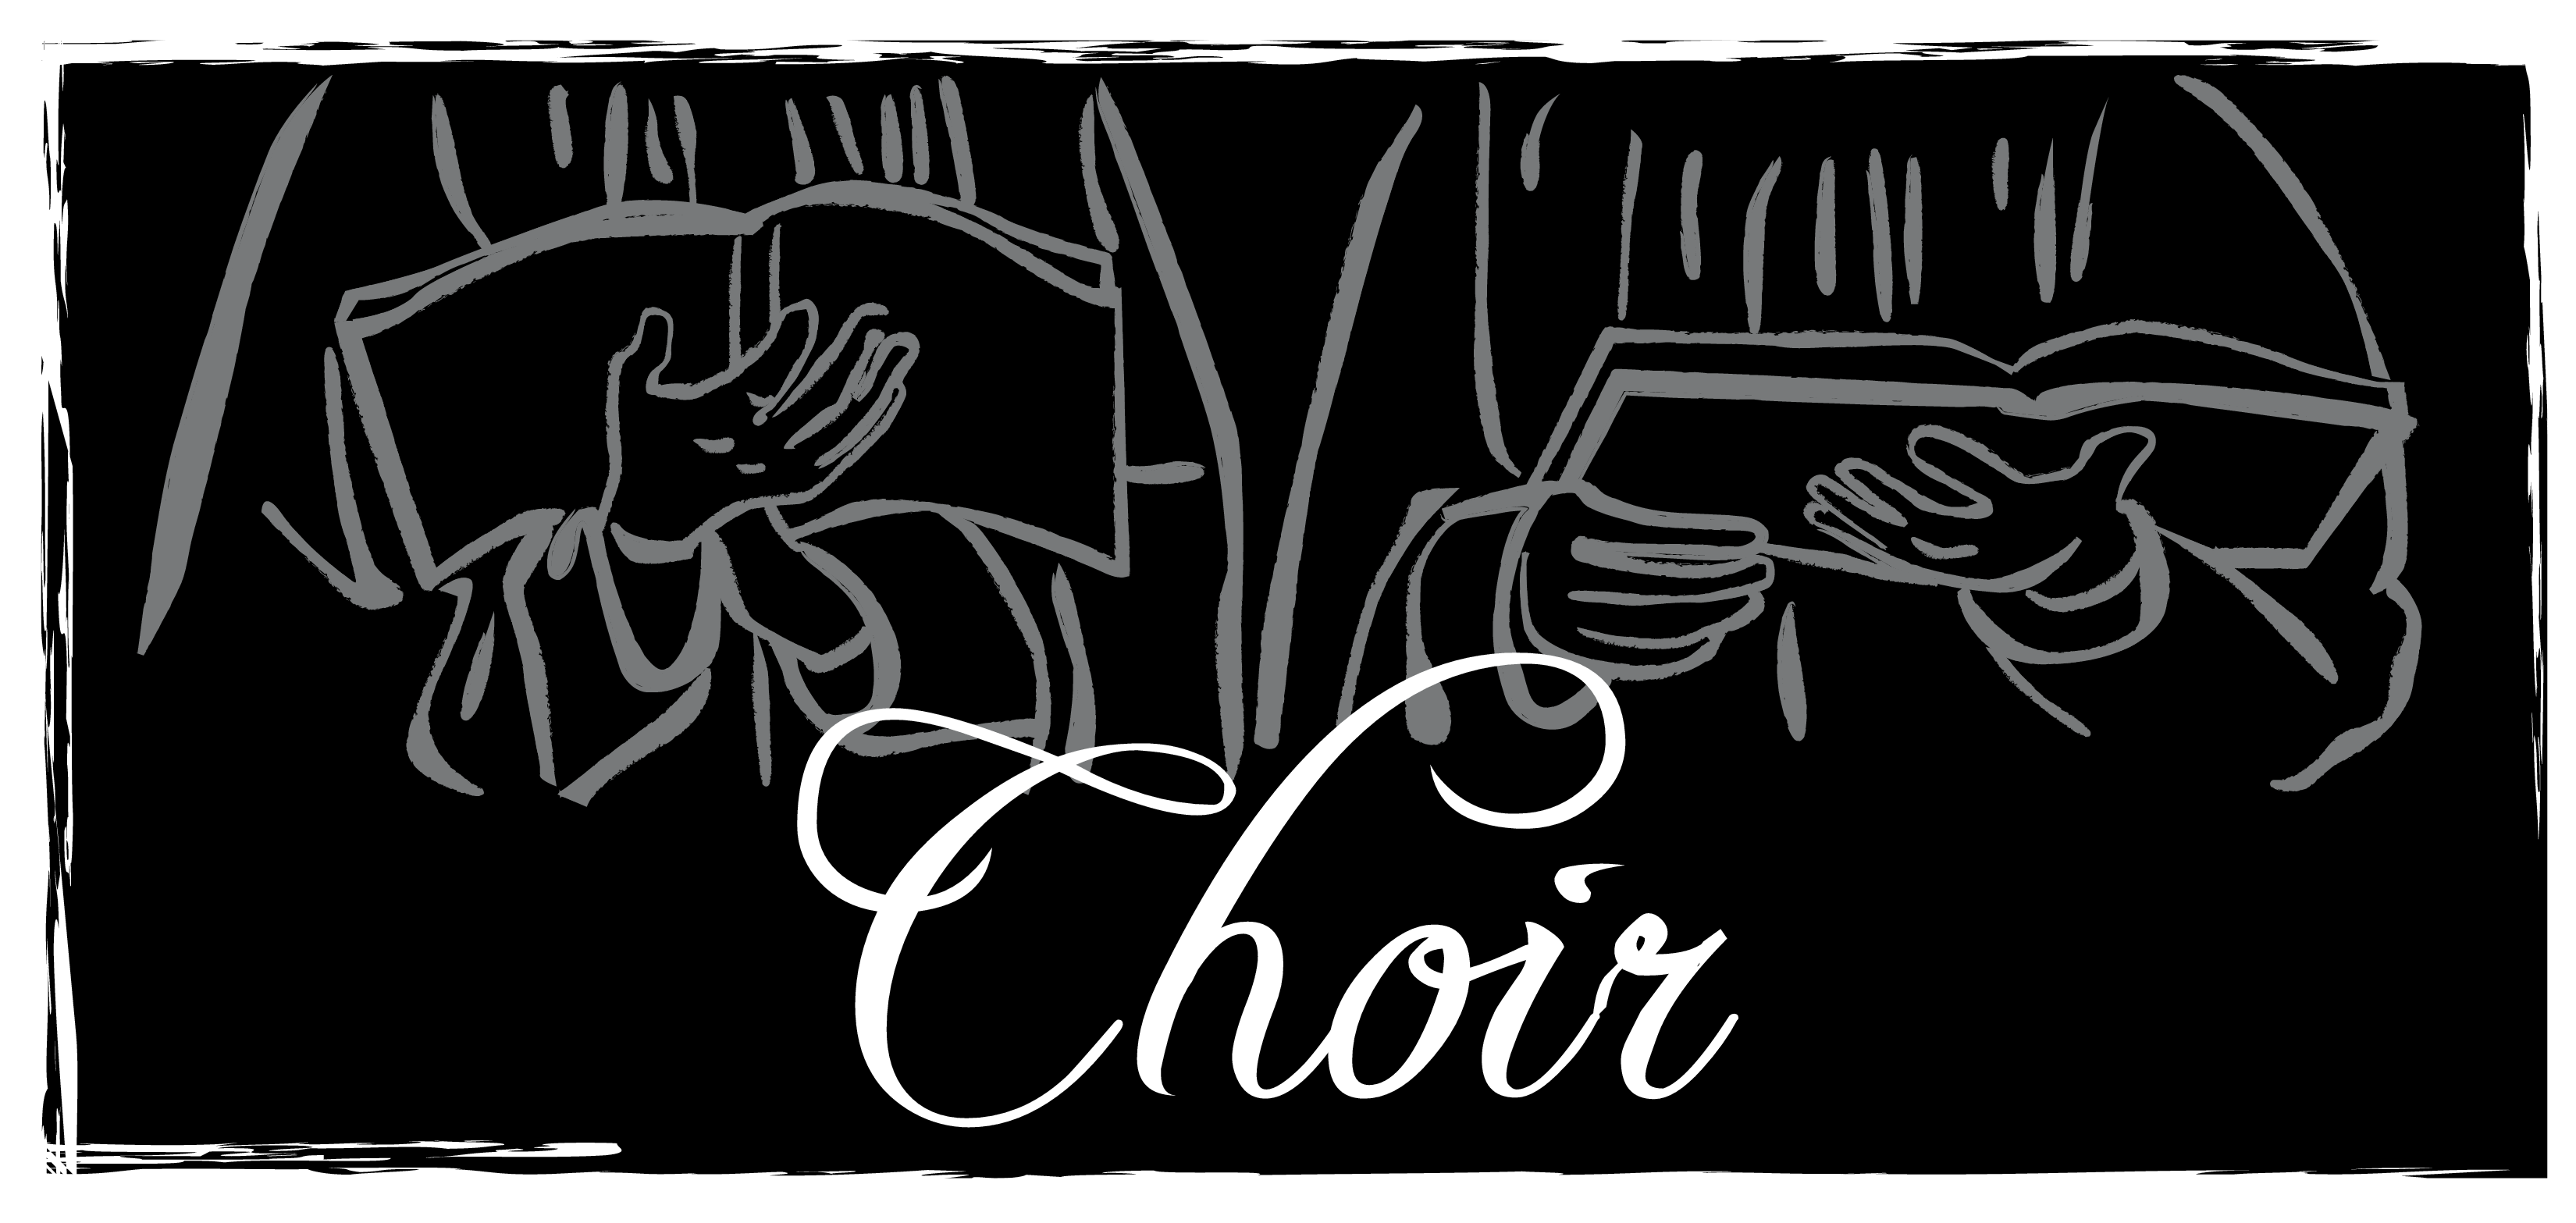 Choir Black And White Clipart 